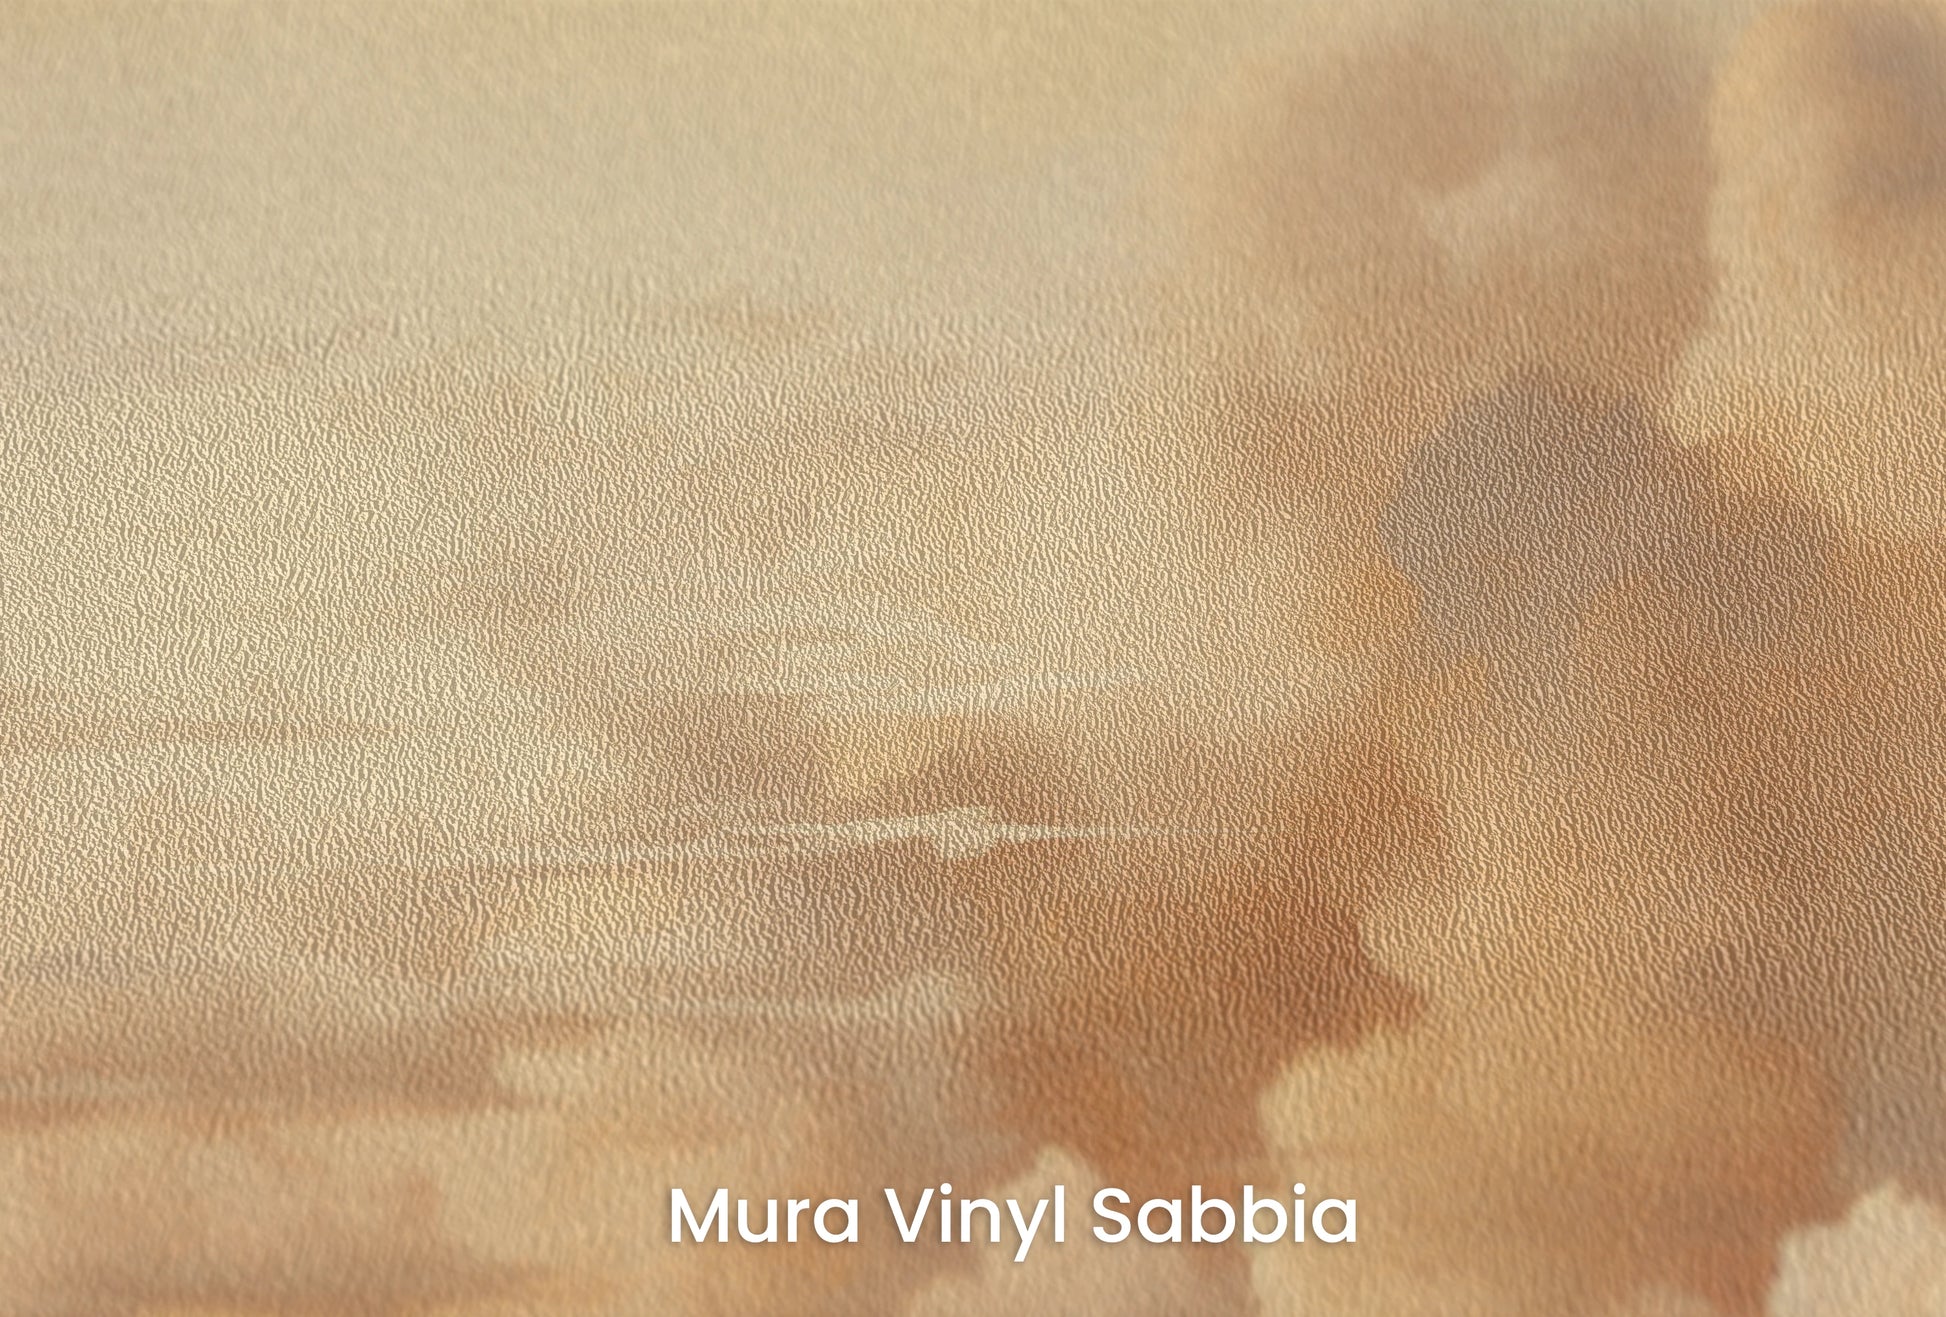 Zbliżenie na artystyczną fototapetę o nazwie Golden Majesty na podłożu Mura Vinyl Sabbia struktura grubego ziarna piasku.